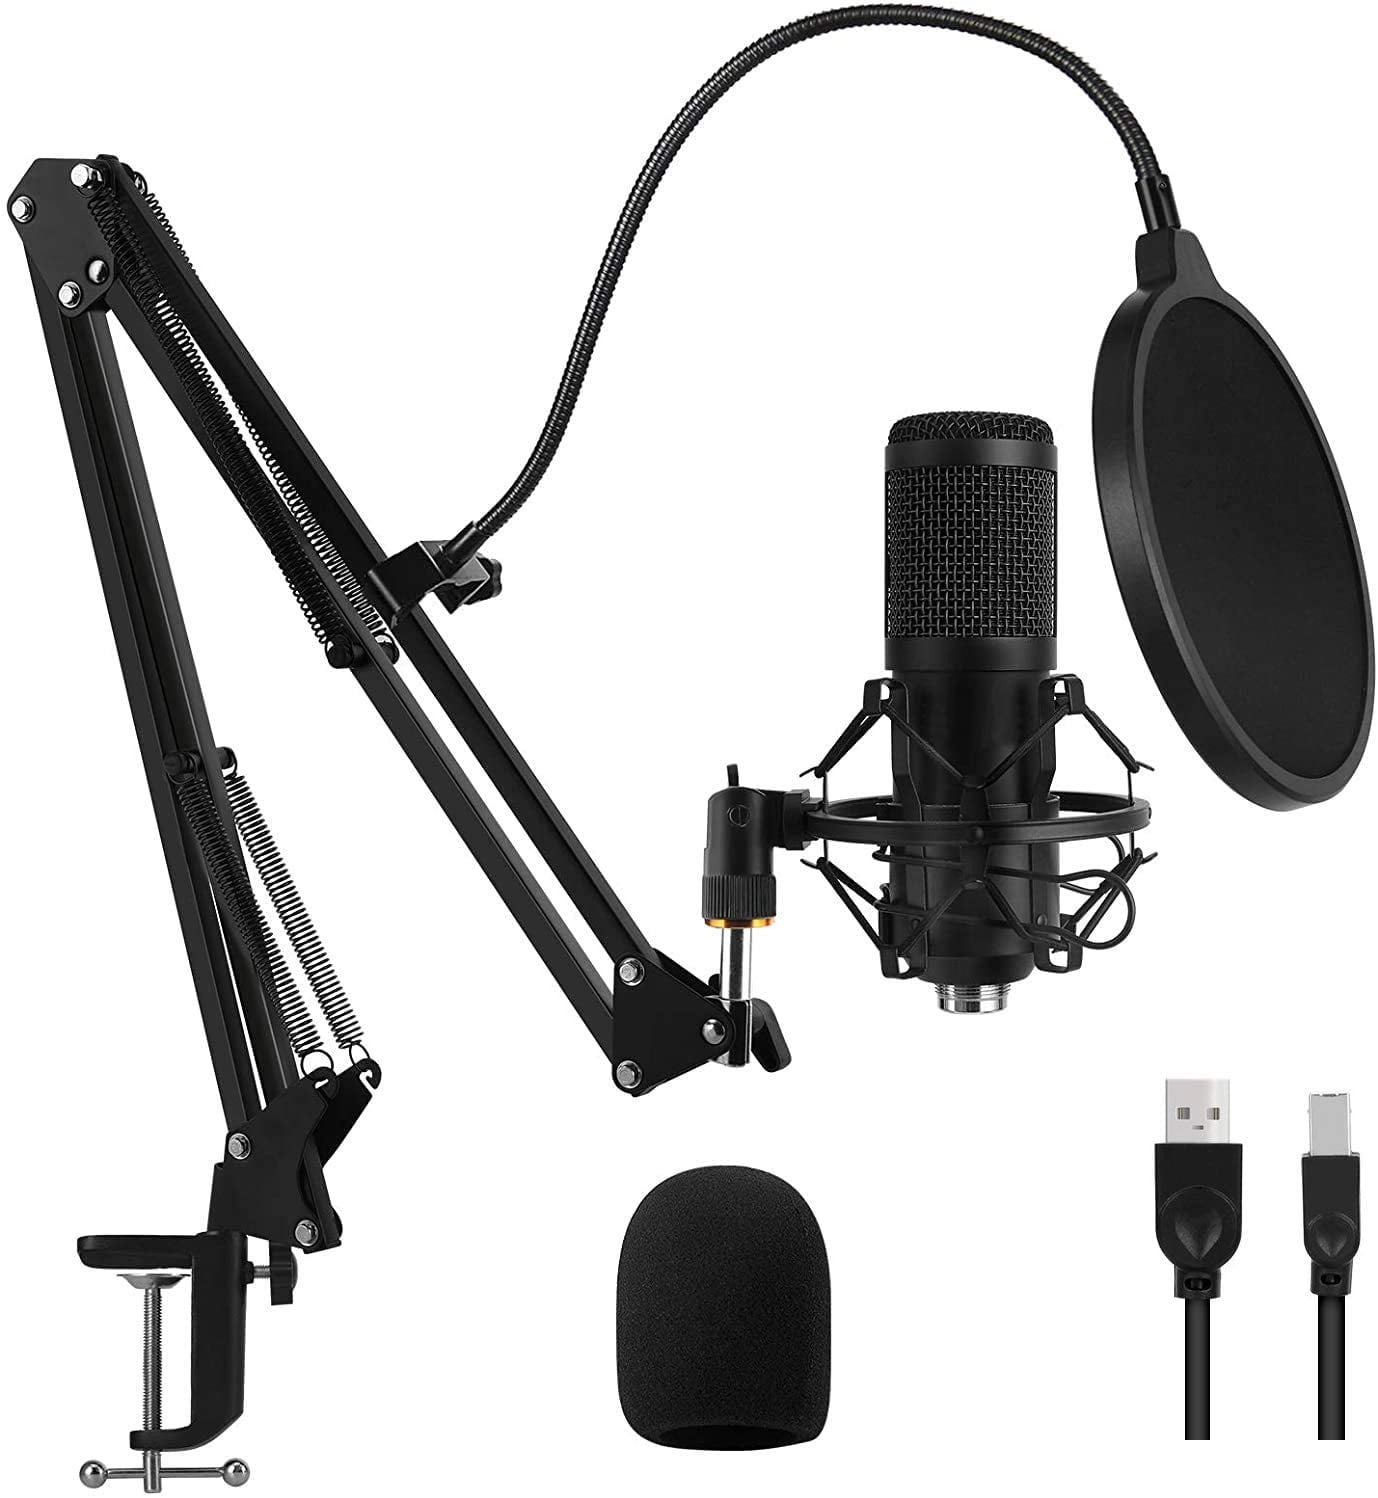 Microfone condensador USB compatível com PC/PS4/iPhone/iPad/Android,  microfone de estúdio para gravação de voz e música, podcast, streaming,  jogos